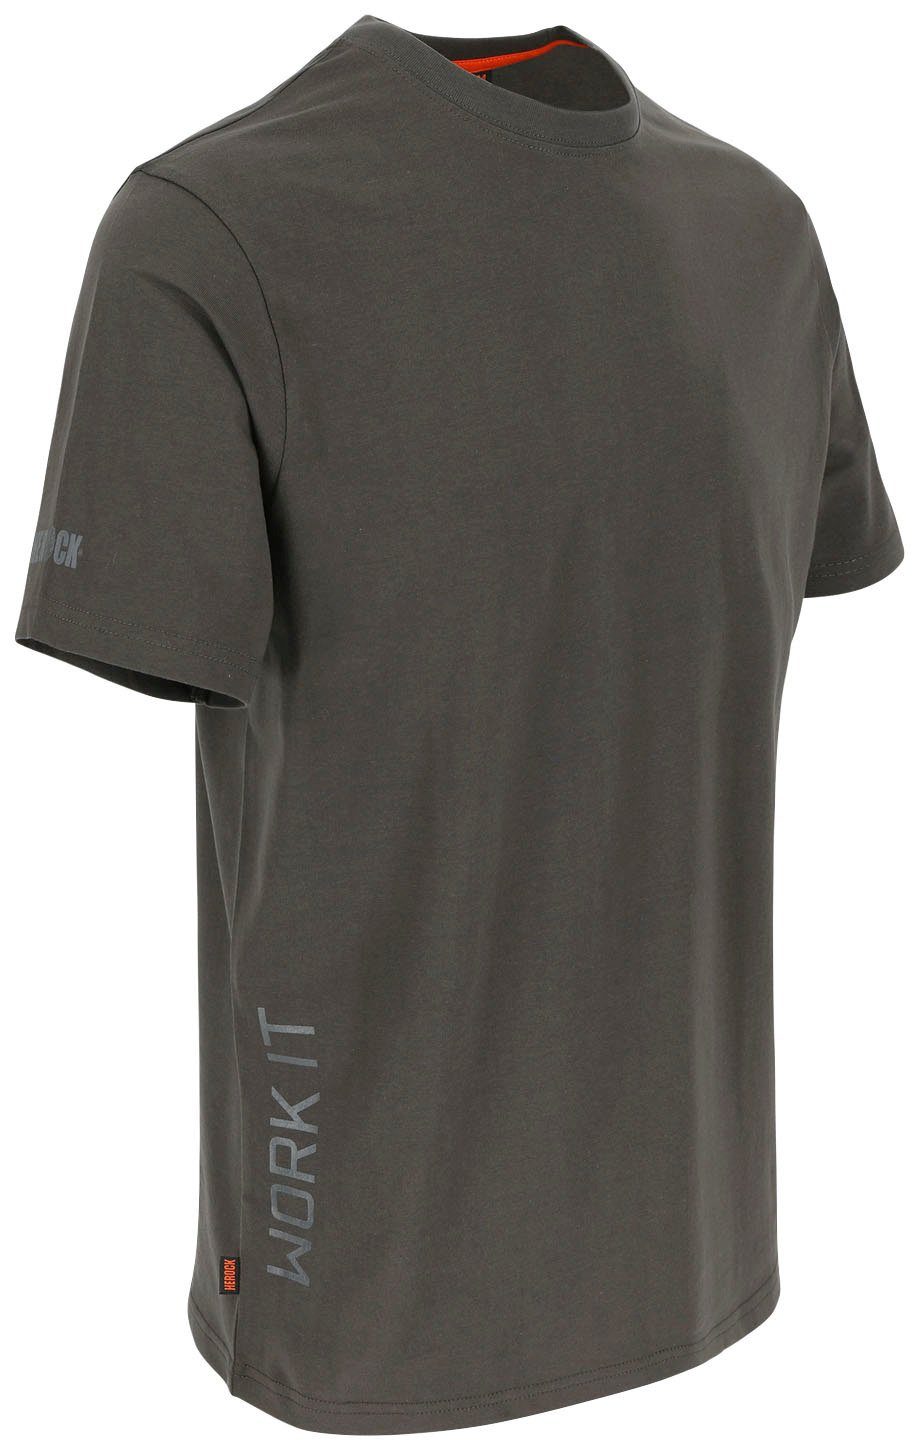 Herock Rundhalsausschnitt, T-Shirt Ärmel Ärmel, Callius grau Herock®-Aufdruck, Rippstrickkragen kurze kurze T-Shirt